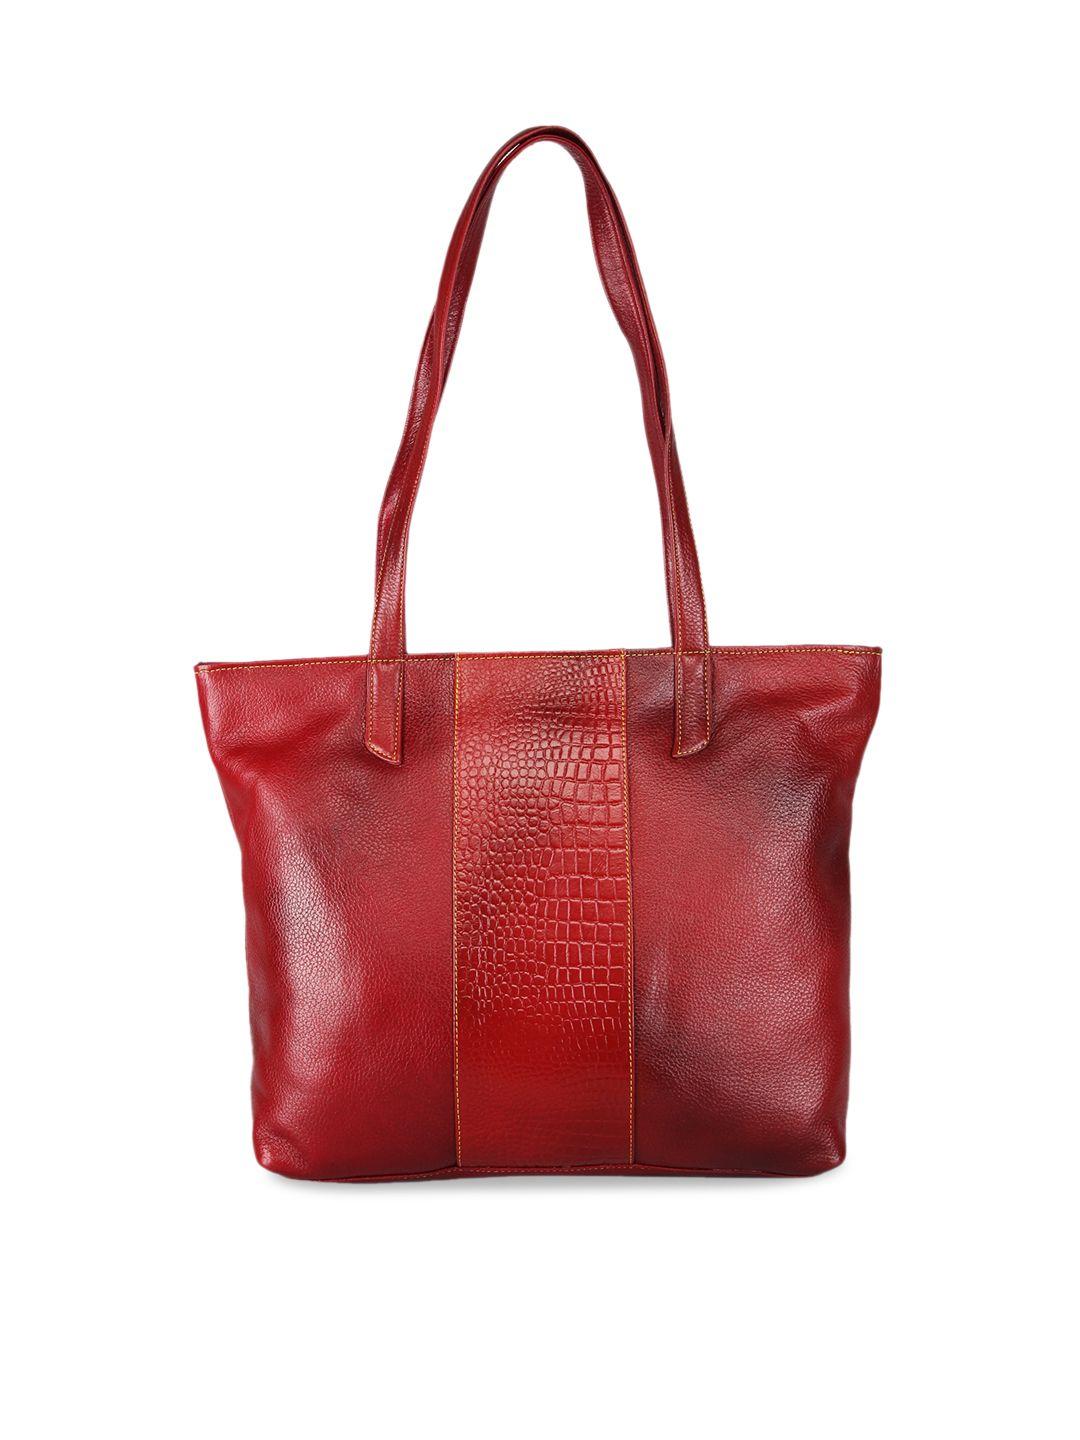 genwayne textured leather structured shoulder bag